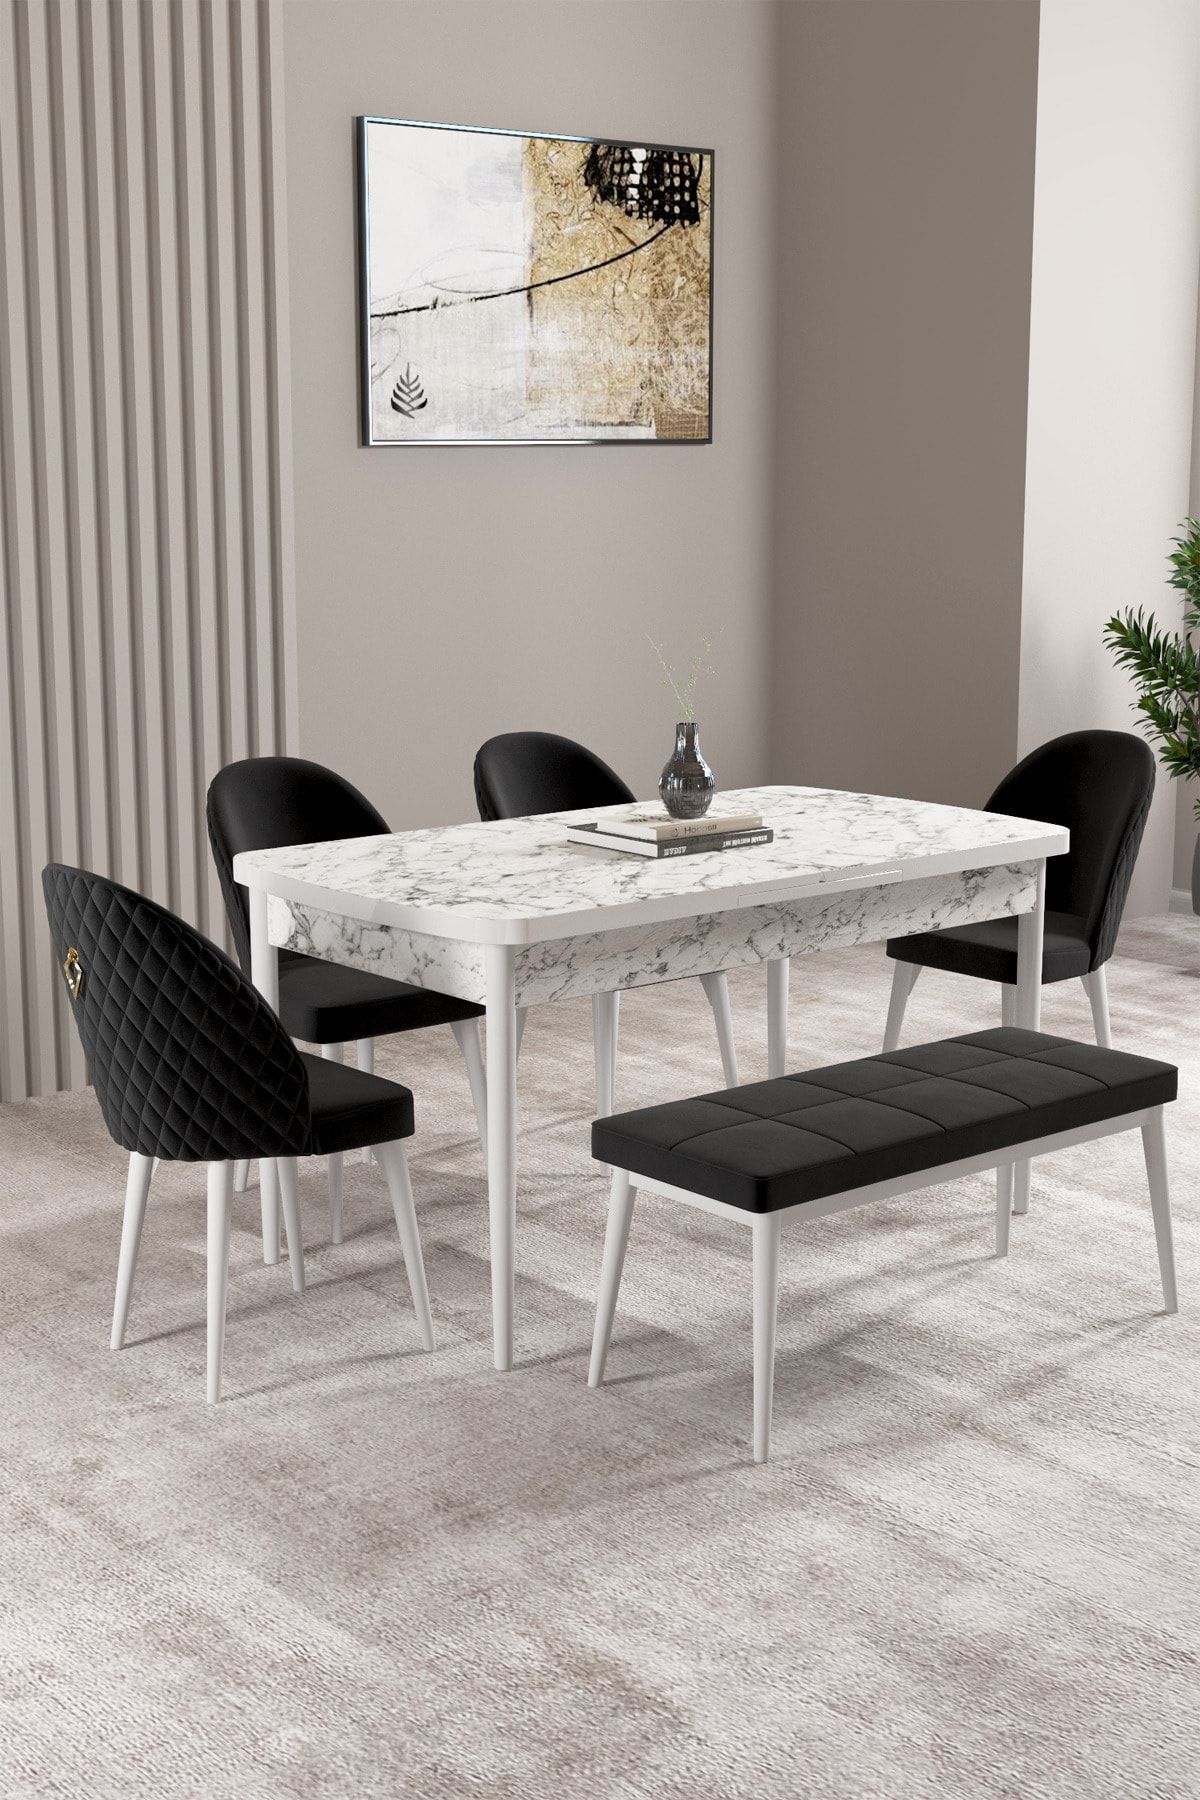 hoopsii Milas Beyaz Mermer Desen 80x132 Mdf Açılabilir Mutfak Masası Takımı 4 Sandalye, 1 Bench